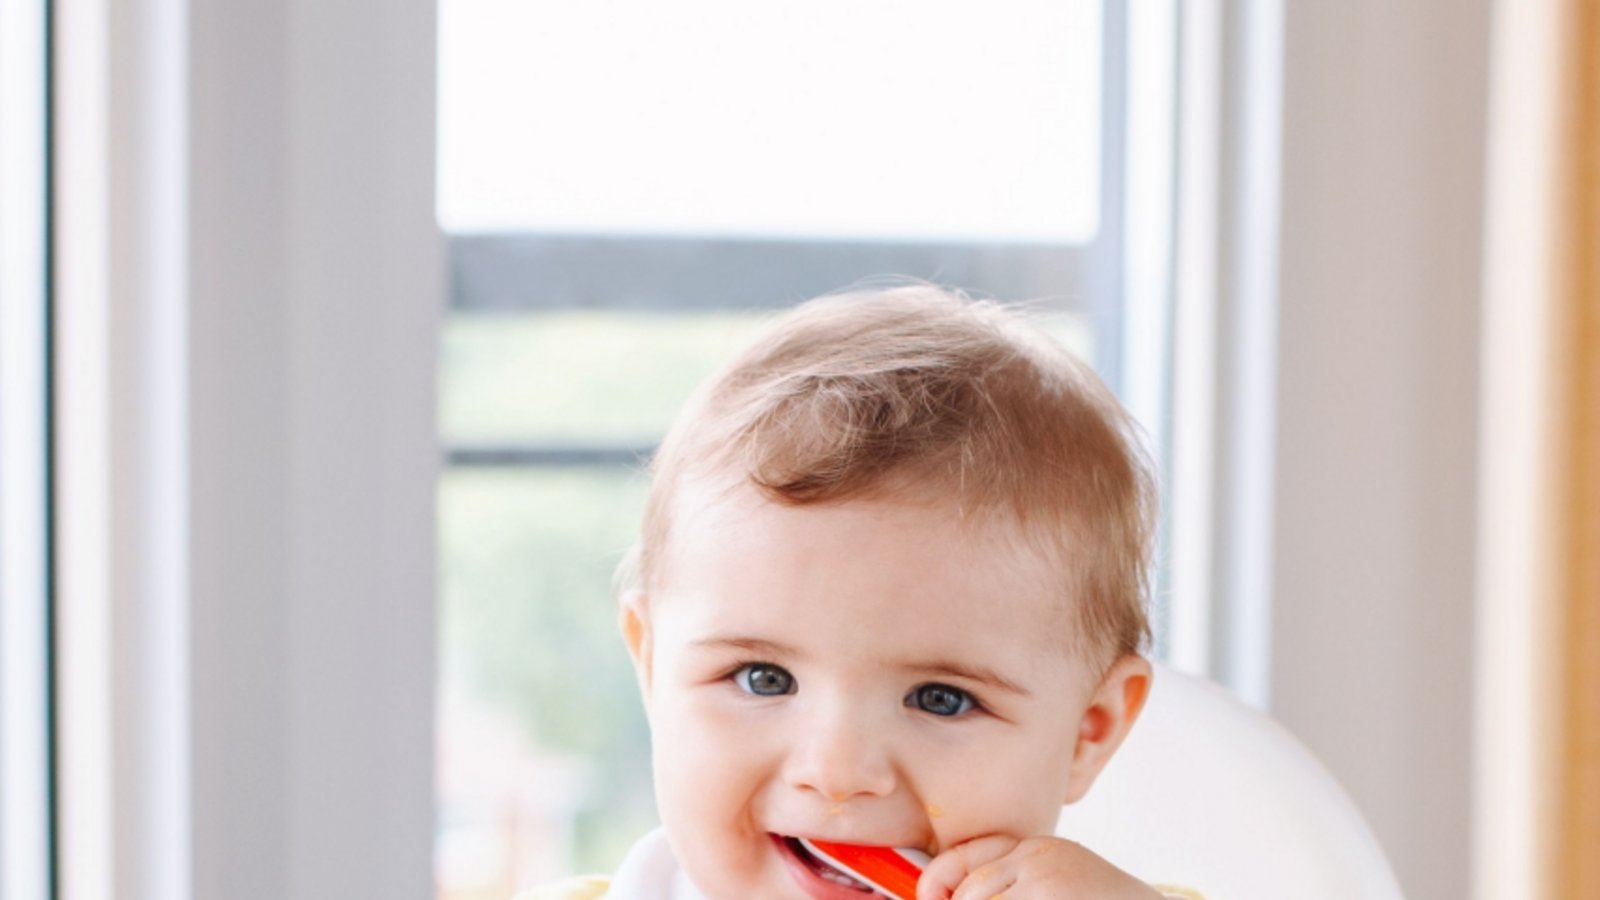 Gesunde Ernährung im ersten Lebensjahr ist das Thema.  Foto: Adobe Stock/LE